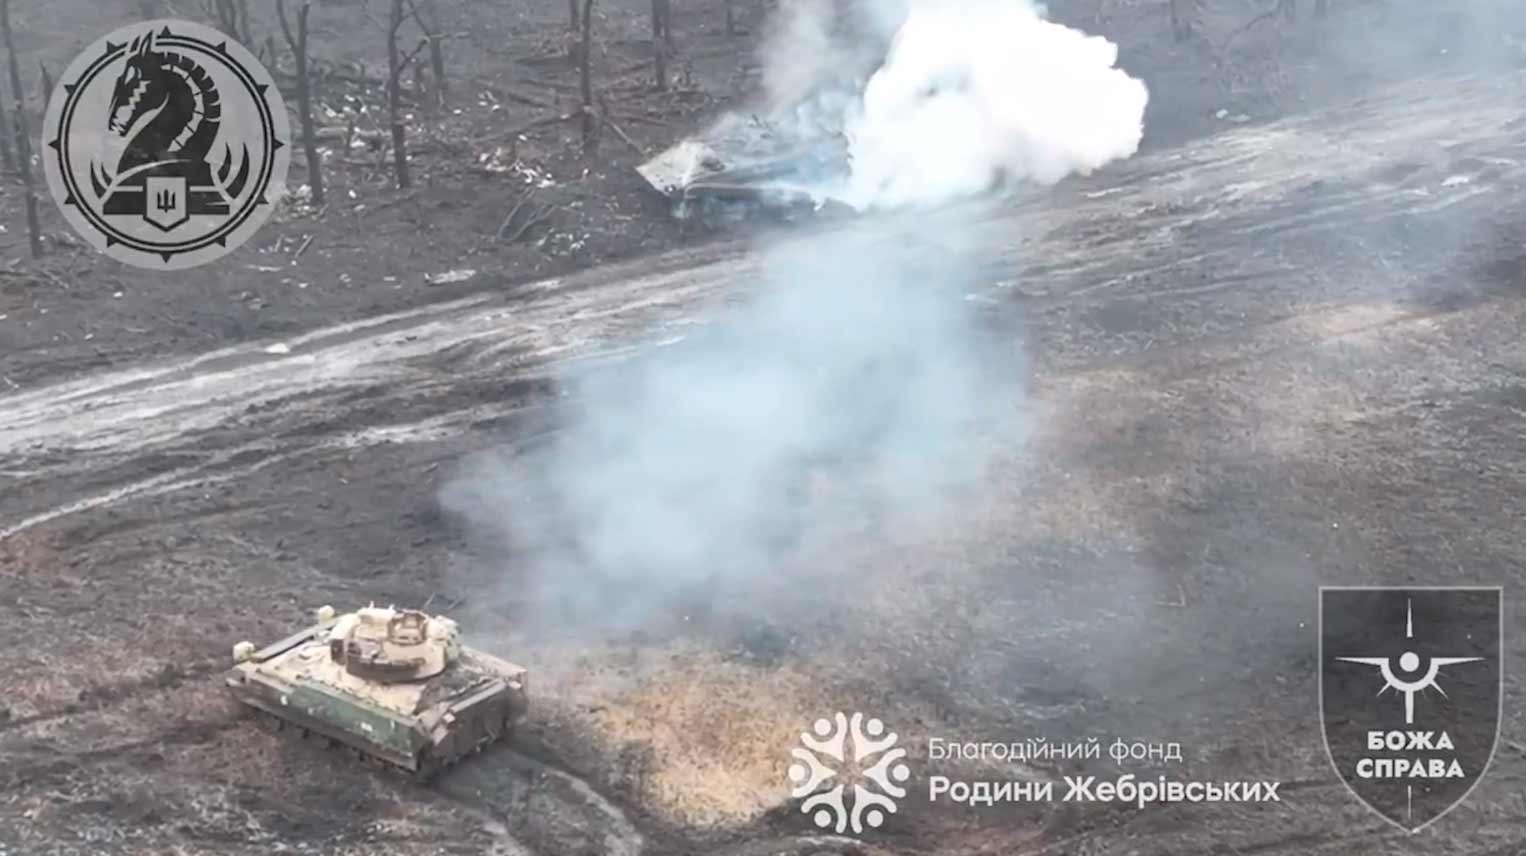 La vidéo montre le véhicule blindé Bradley IFV américain en action sur le front d'Avdiivka